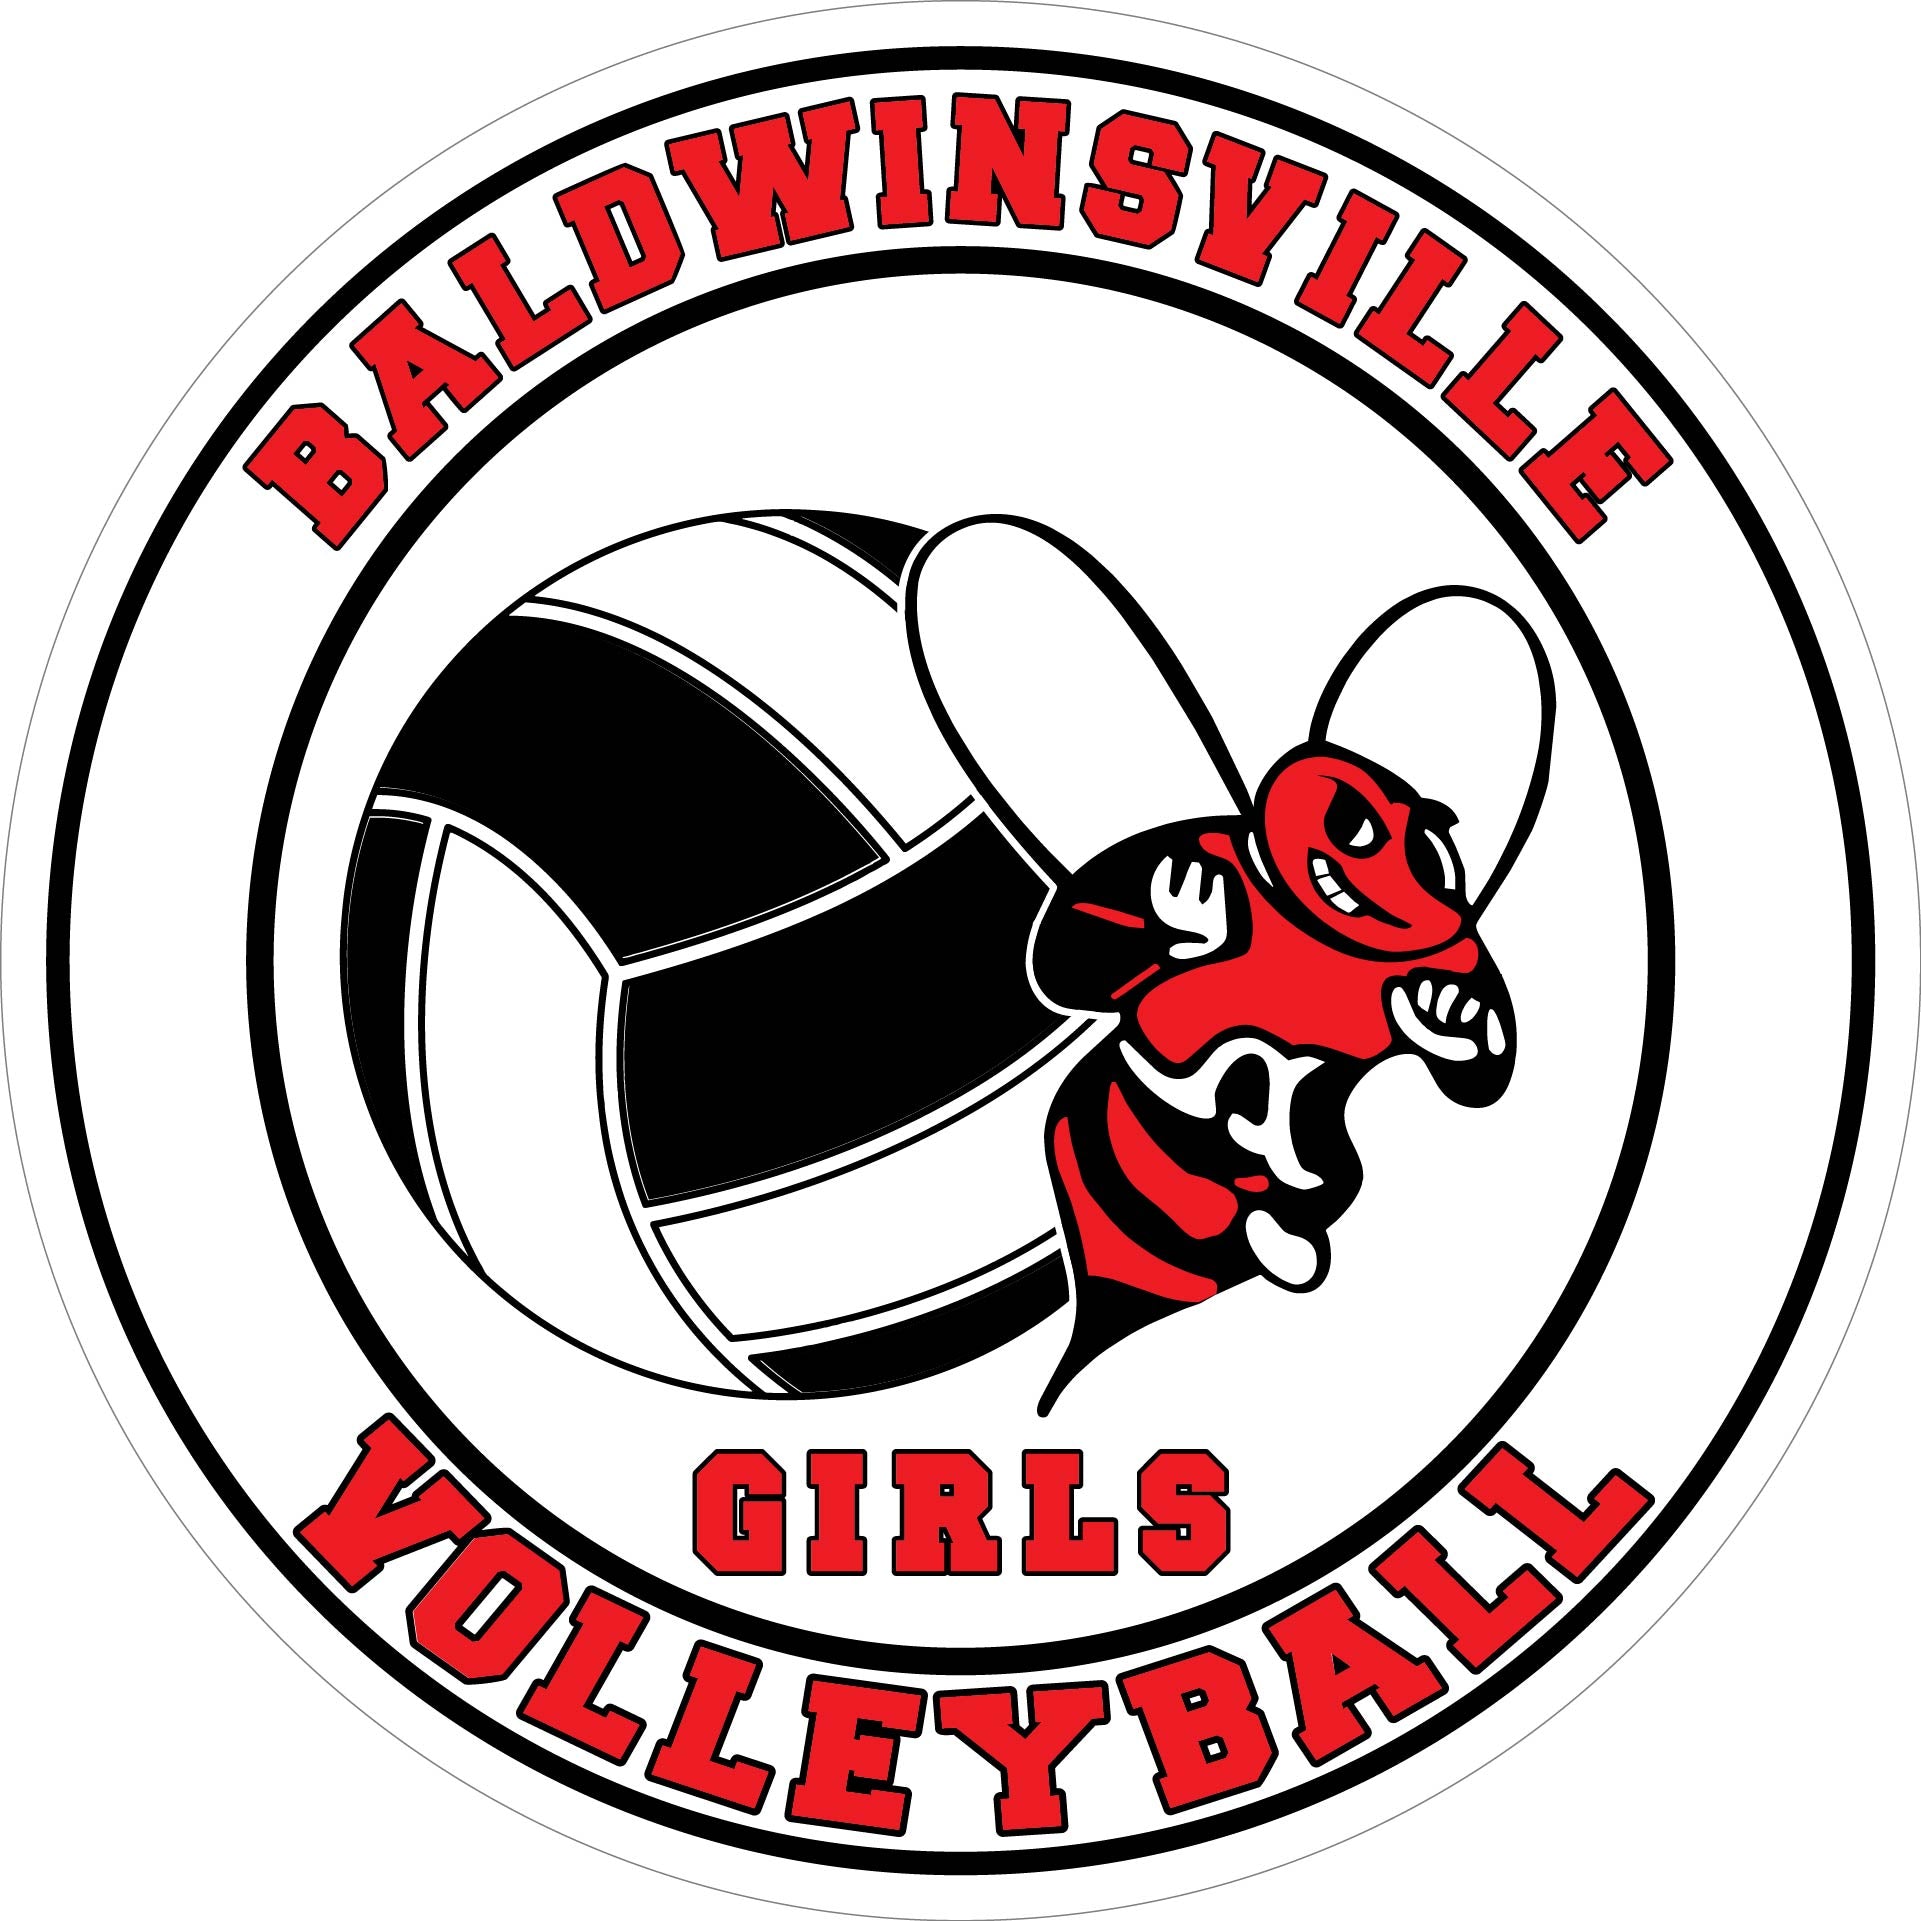 "Baldwinsville Girls Volleyball" Decal